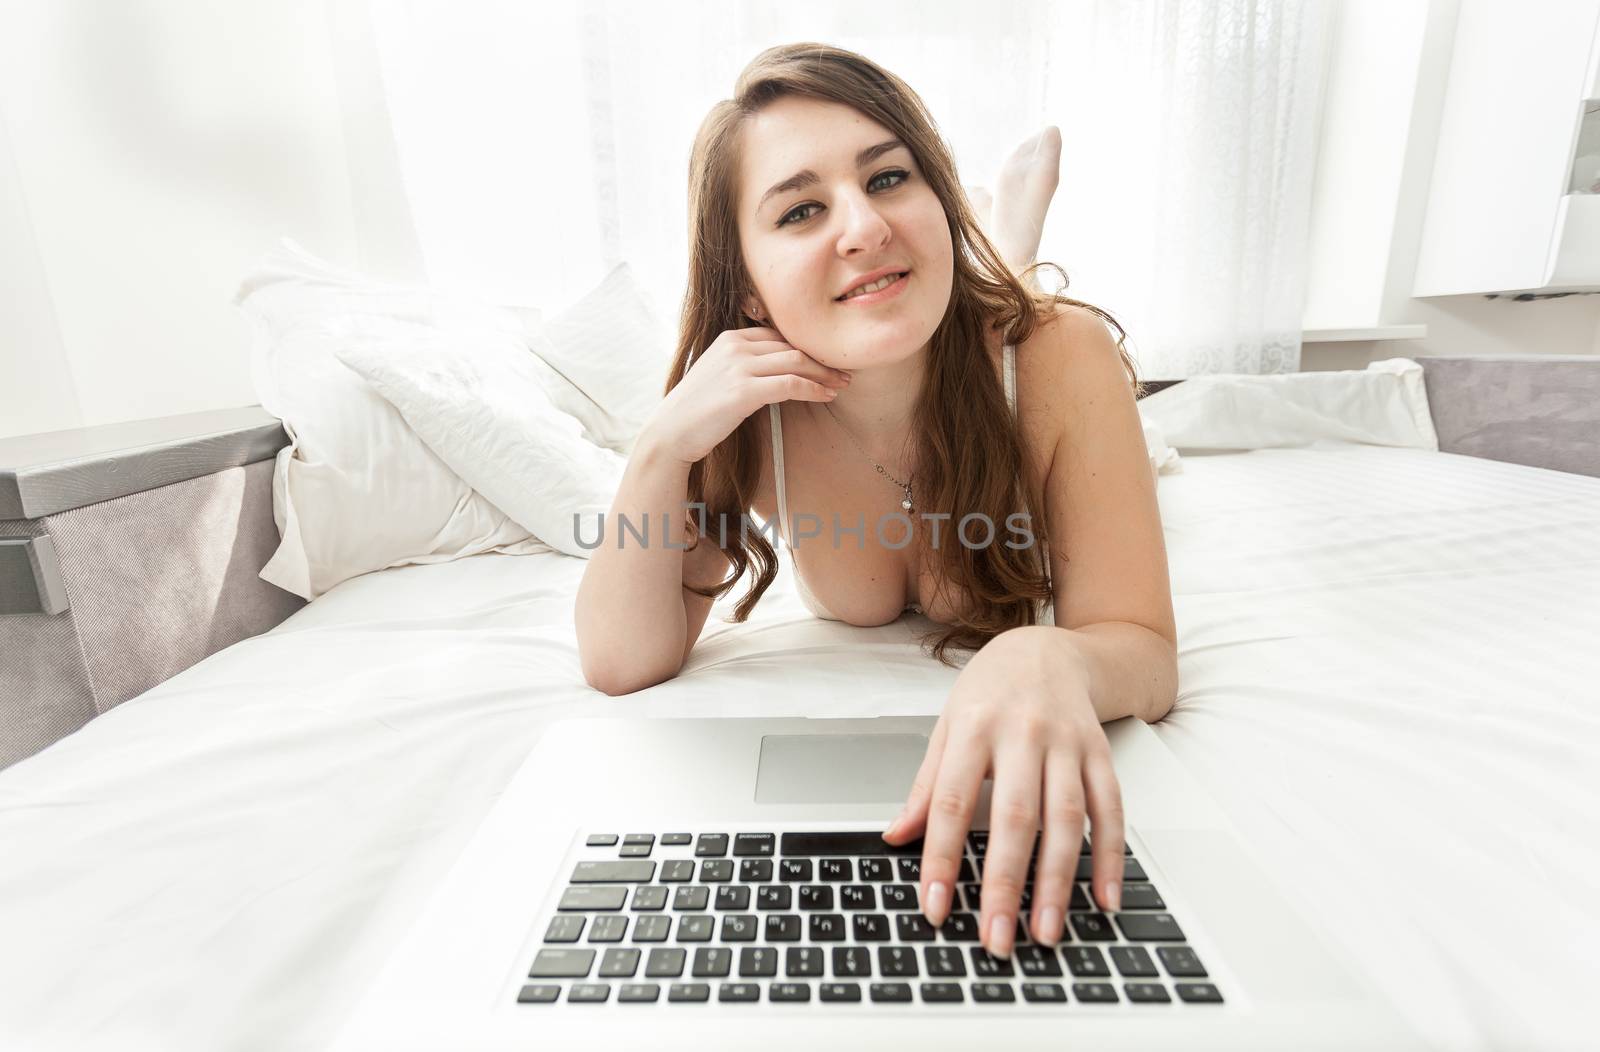 brunette woman using laptop keyboard in bed by Kryzhov